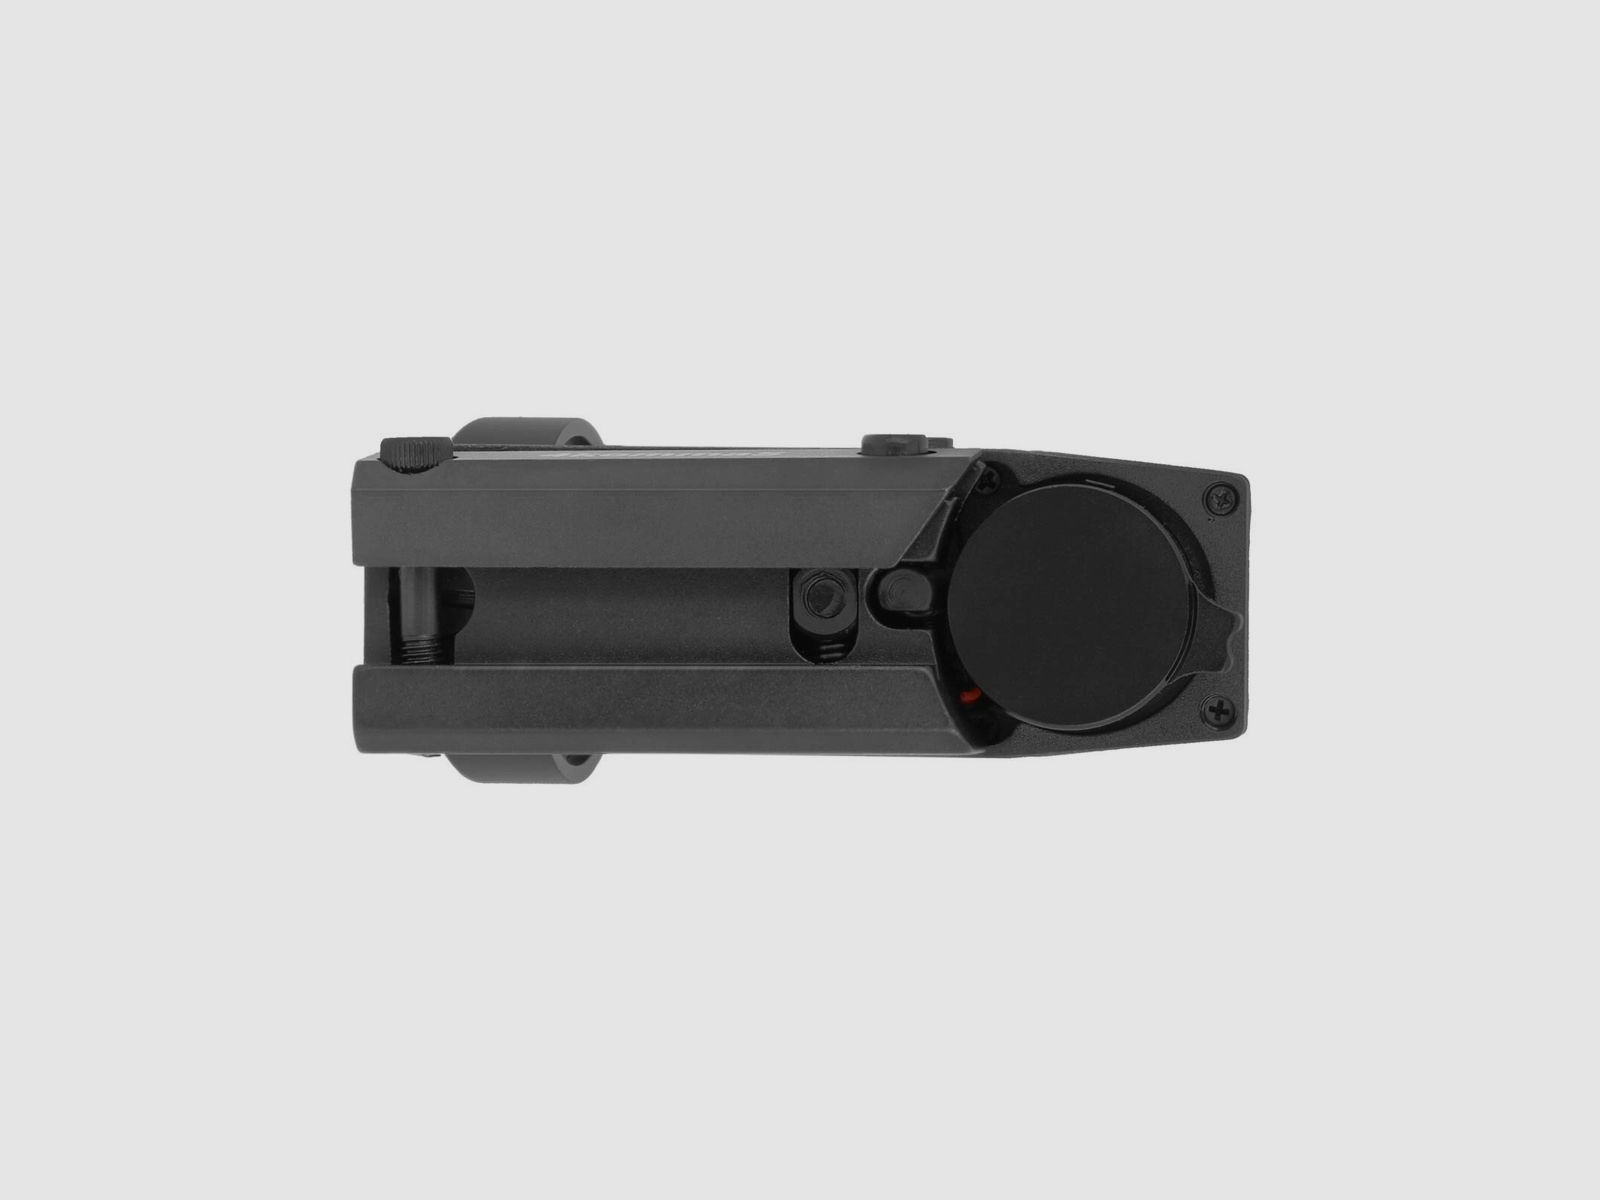 4komma5 HD101A 1x33 Red Dot / Leuchtpunktvisier mit 11 mm Montage